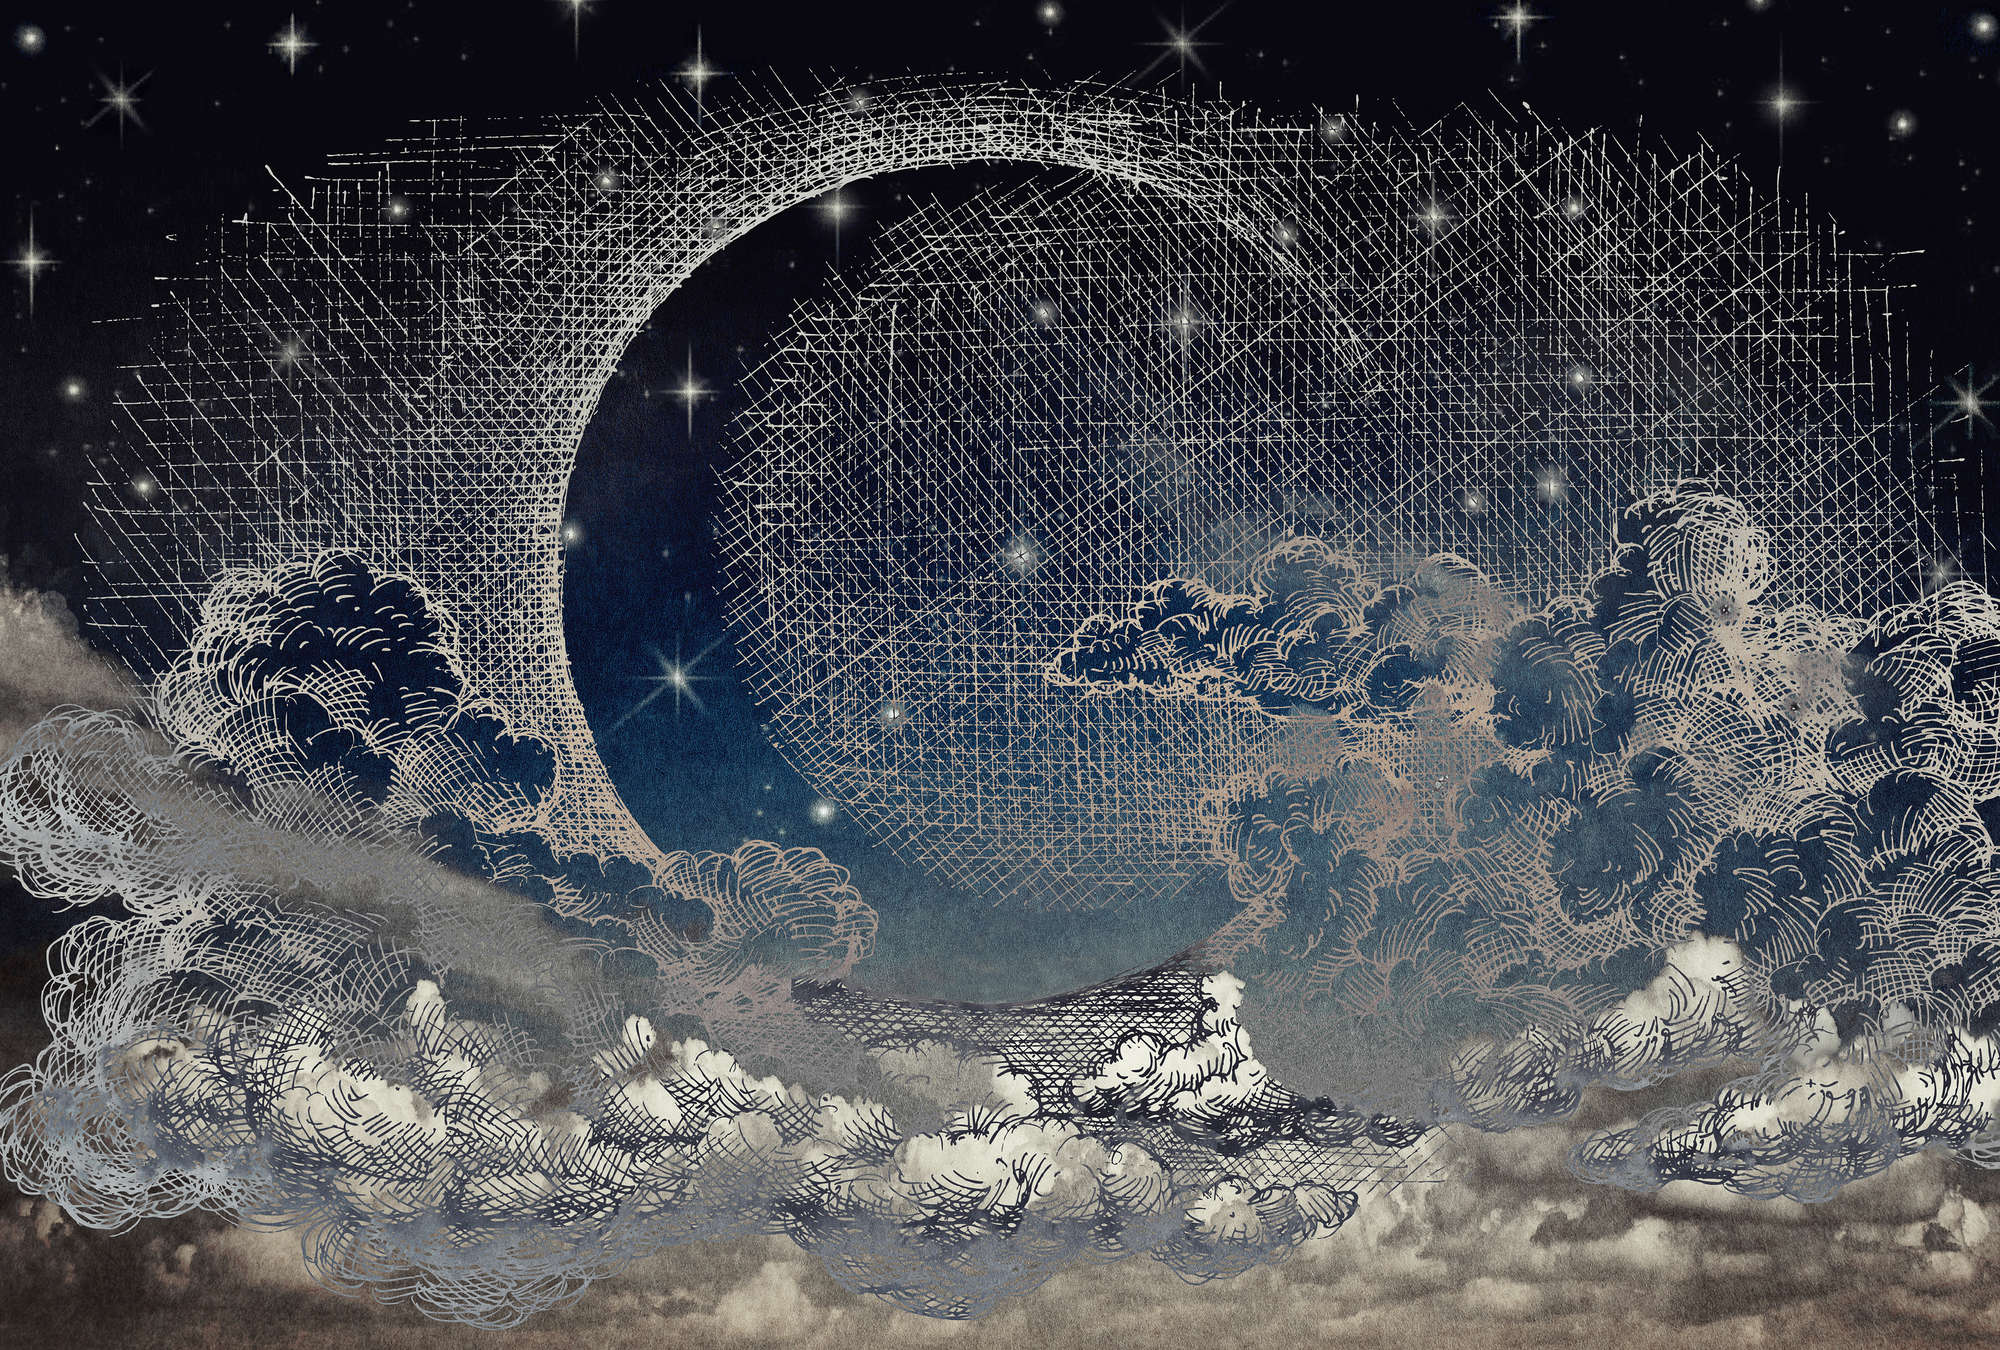             Papel Pintado Noche de Cómic, Luna Creciente y Nubes - Beige, Blanco, Azul
        